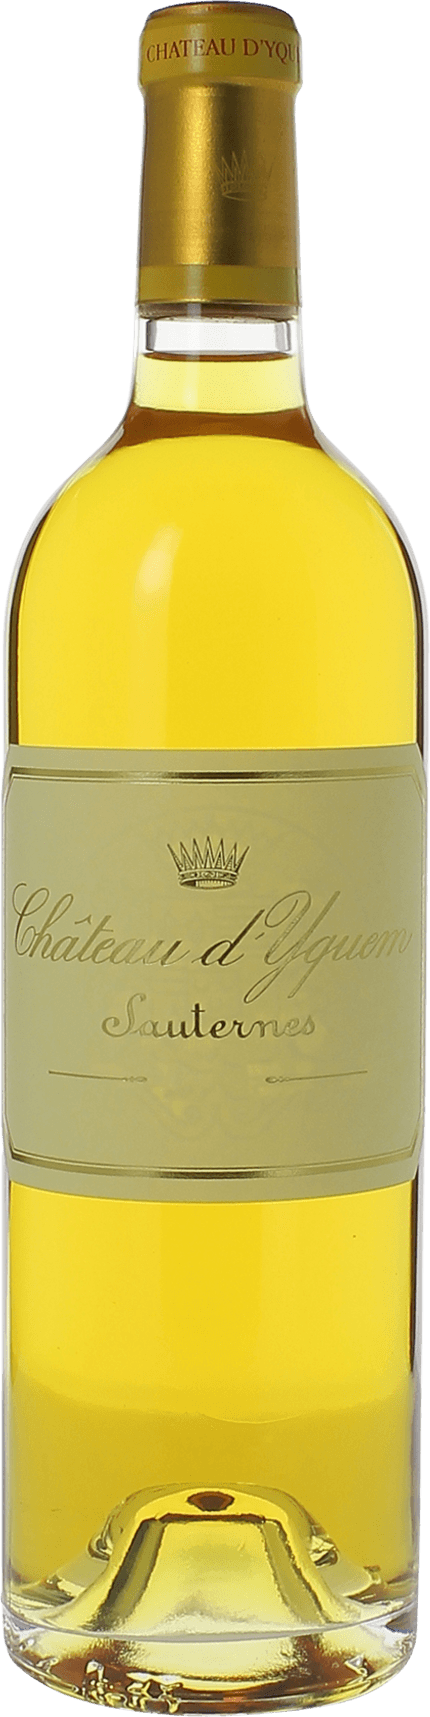 Yquem 1997 1er Grand cru class Sauternes, Bordeaux blanc